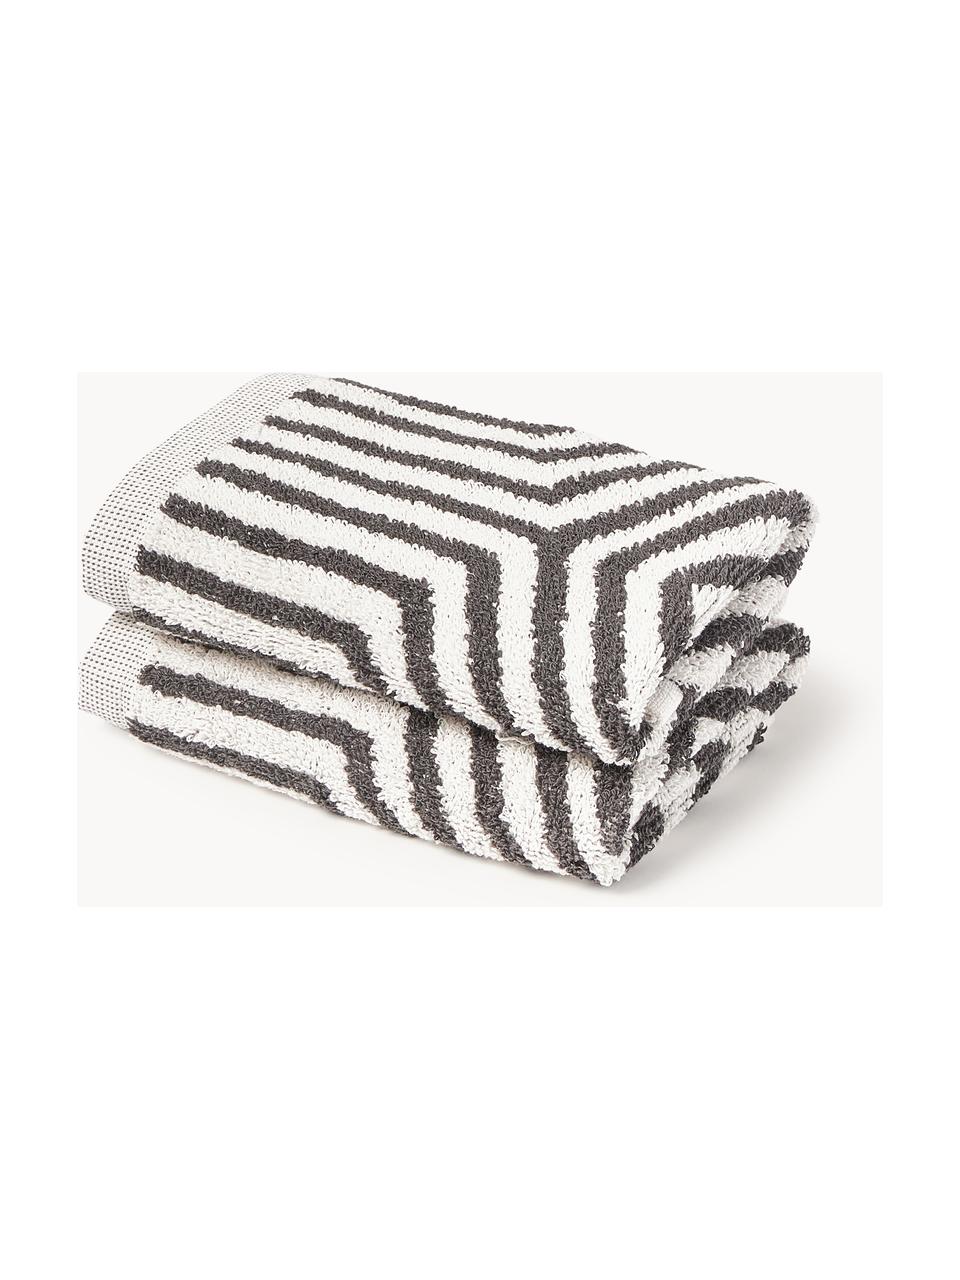 Ręcznik z bawełny Fatu, różne rozmiary, Biały, antracytowy, Ręcznik do rąk, S 50 x D 100 cm, 2 szt.